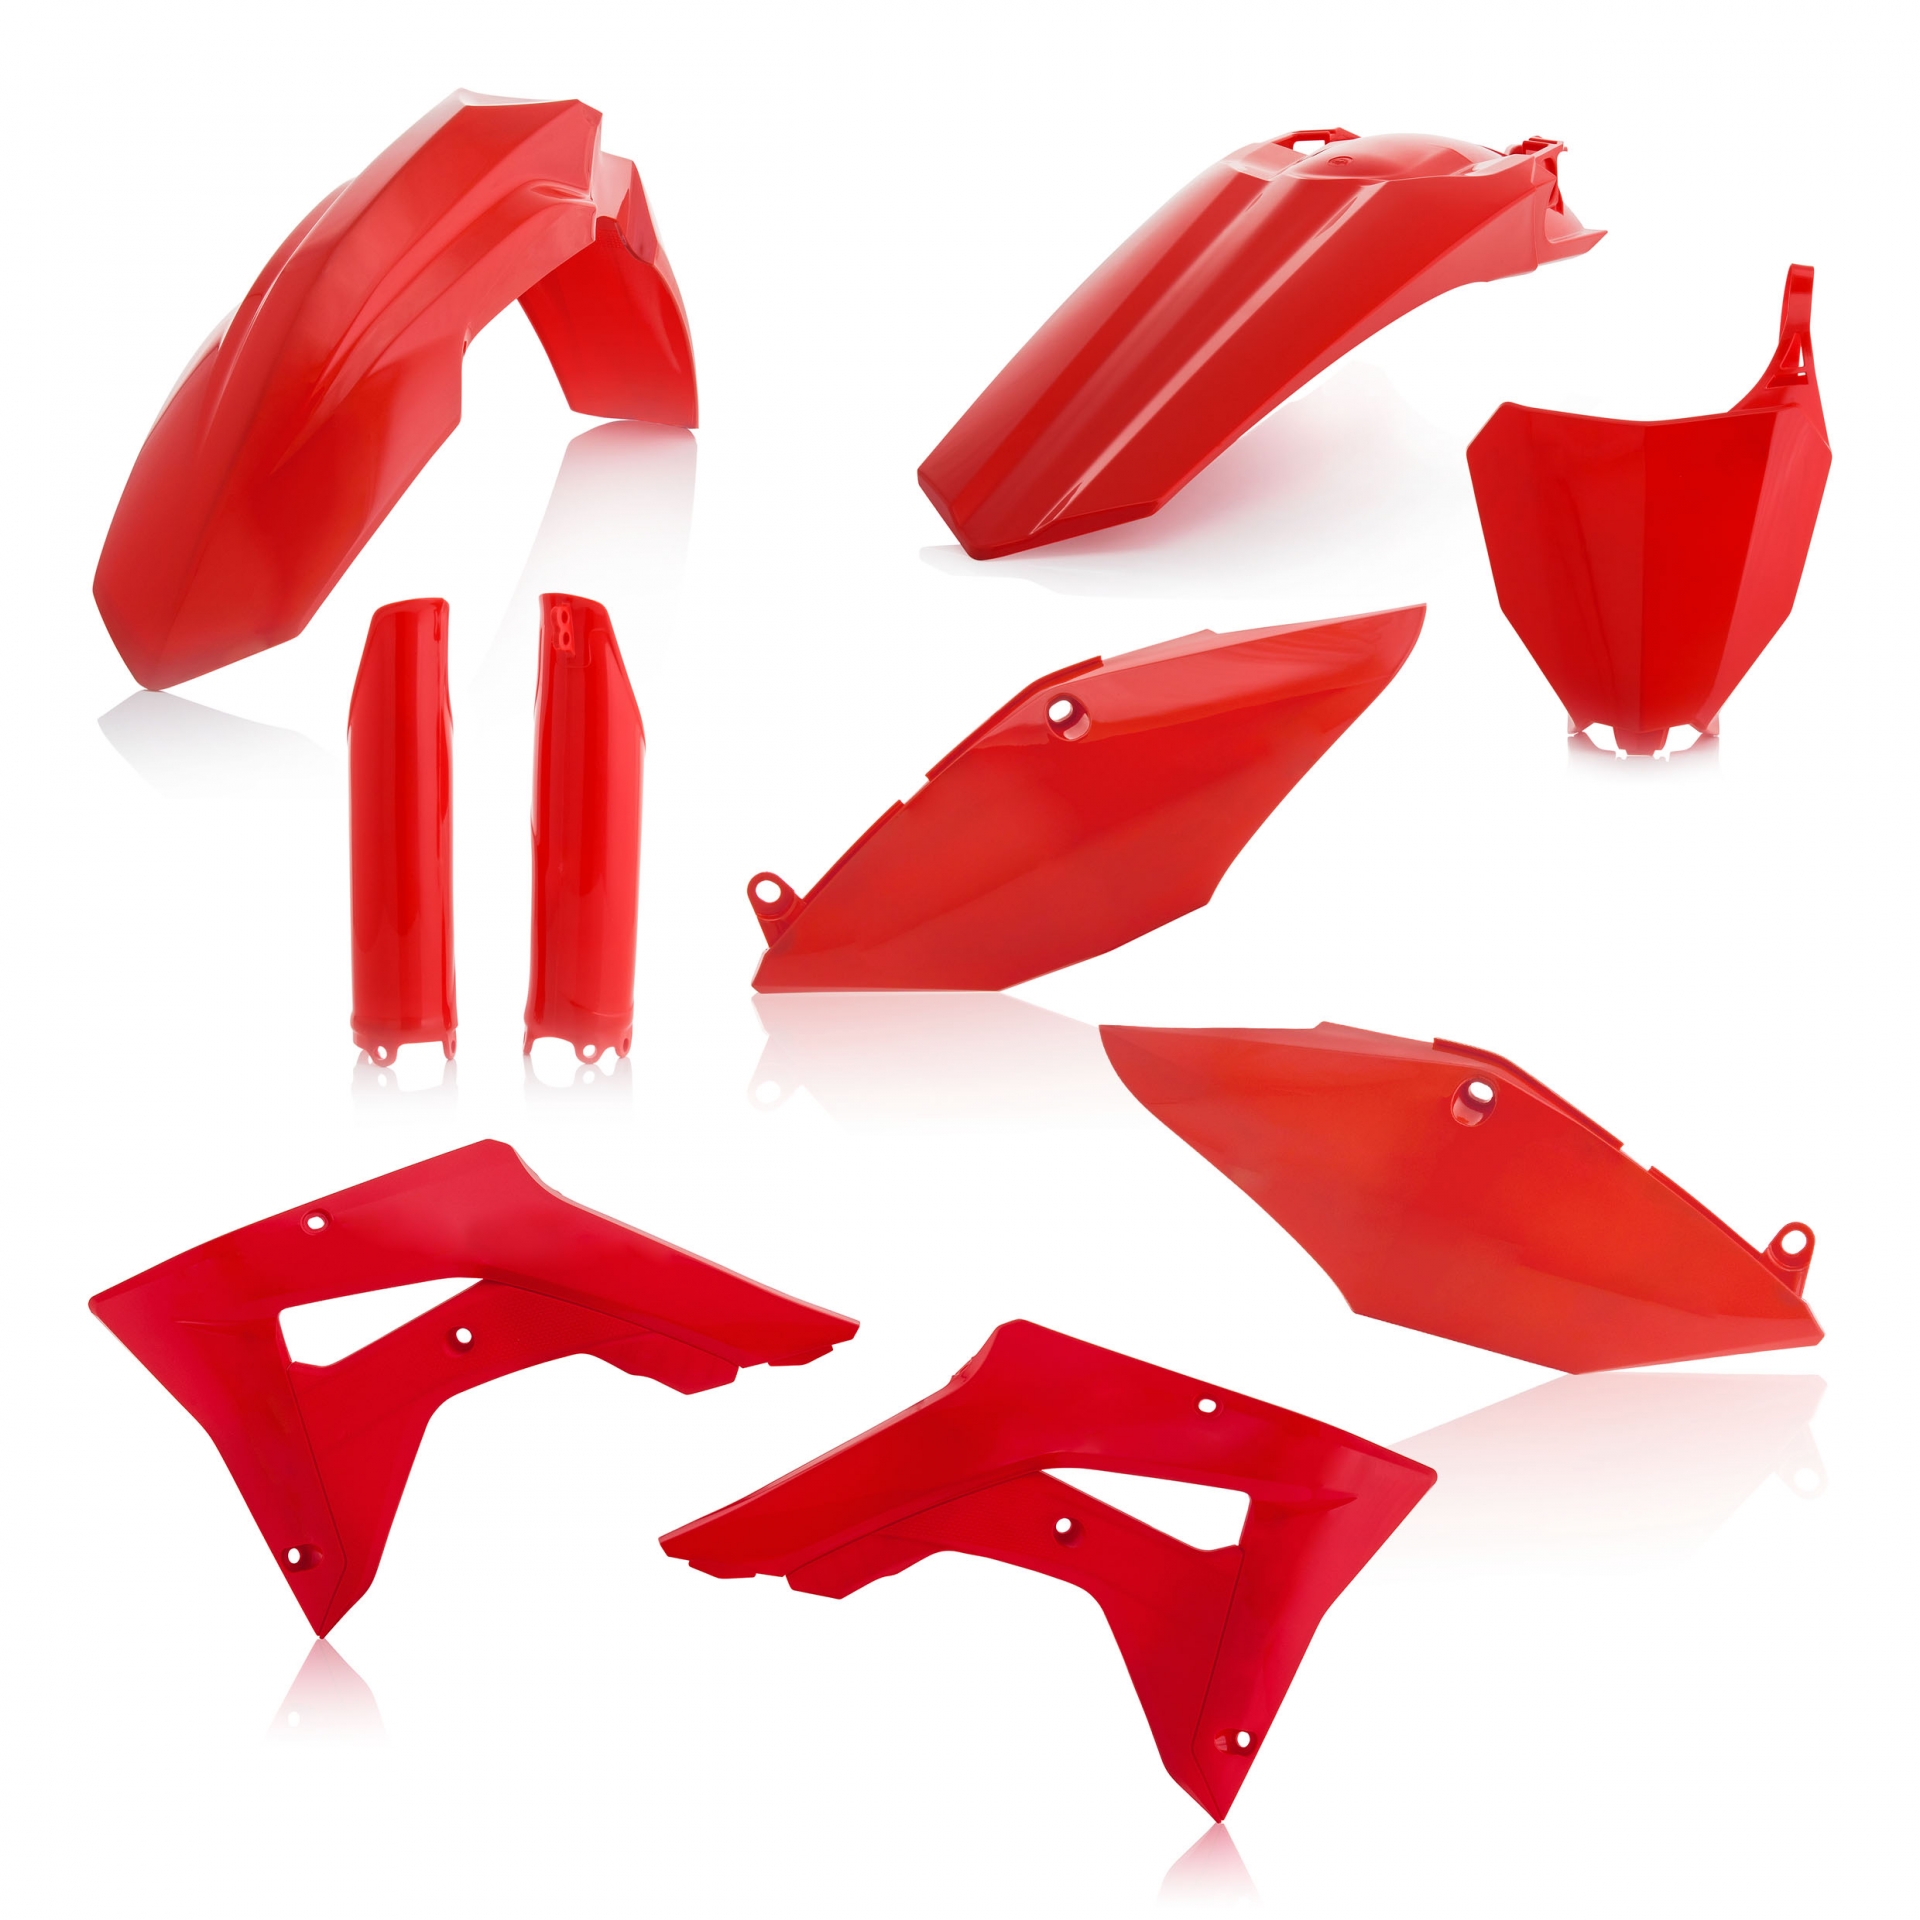 Plastikteile für deine Honda CRF / CR 450 in rot bestehend aus Kotflügel vorn Kotflügel hinten Kühlerspoiler Seitenteile Gabelschützer Startnummerntafel